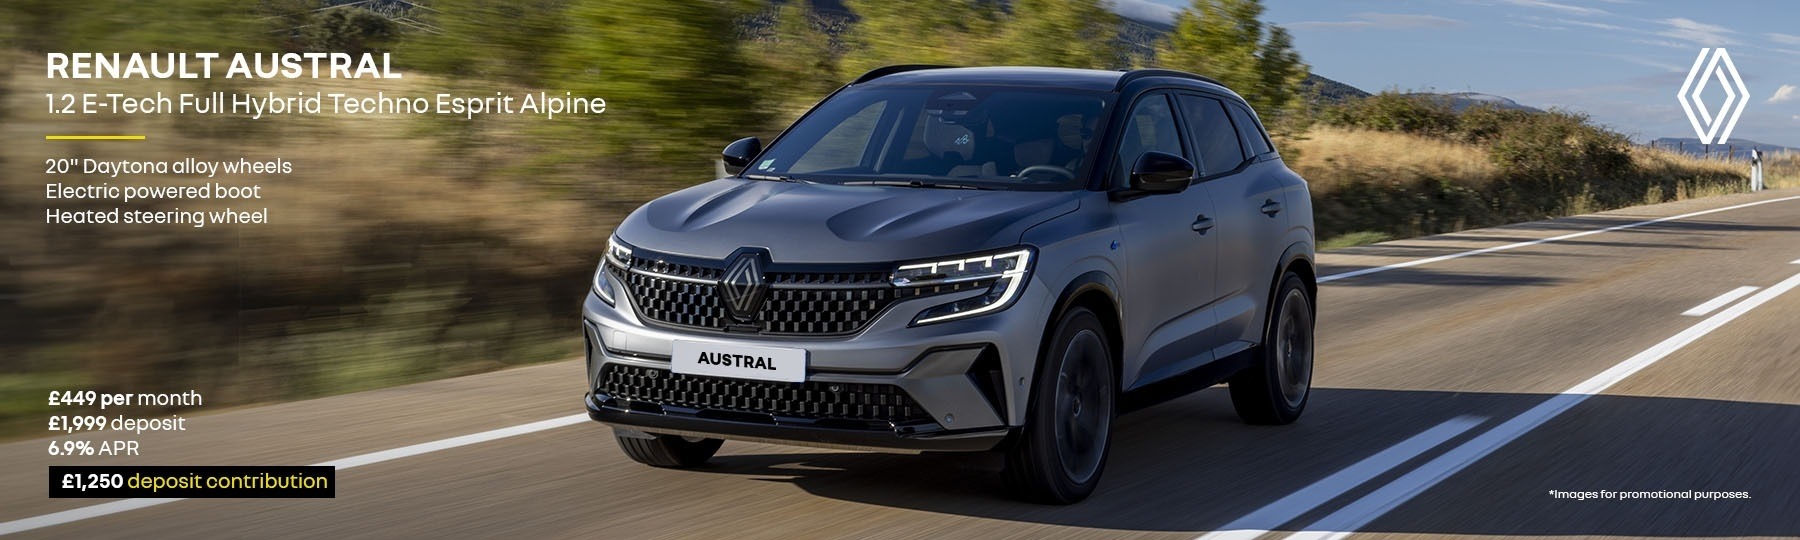 All New Renault Austral E-Tech full hybrid New Car Offer